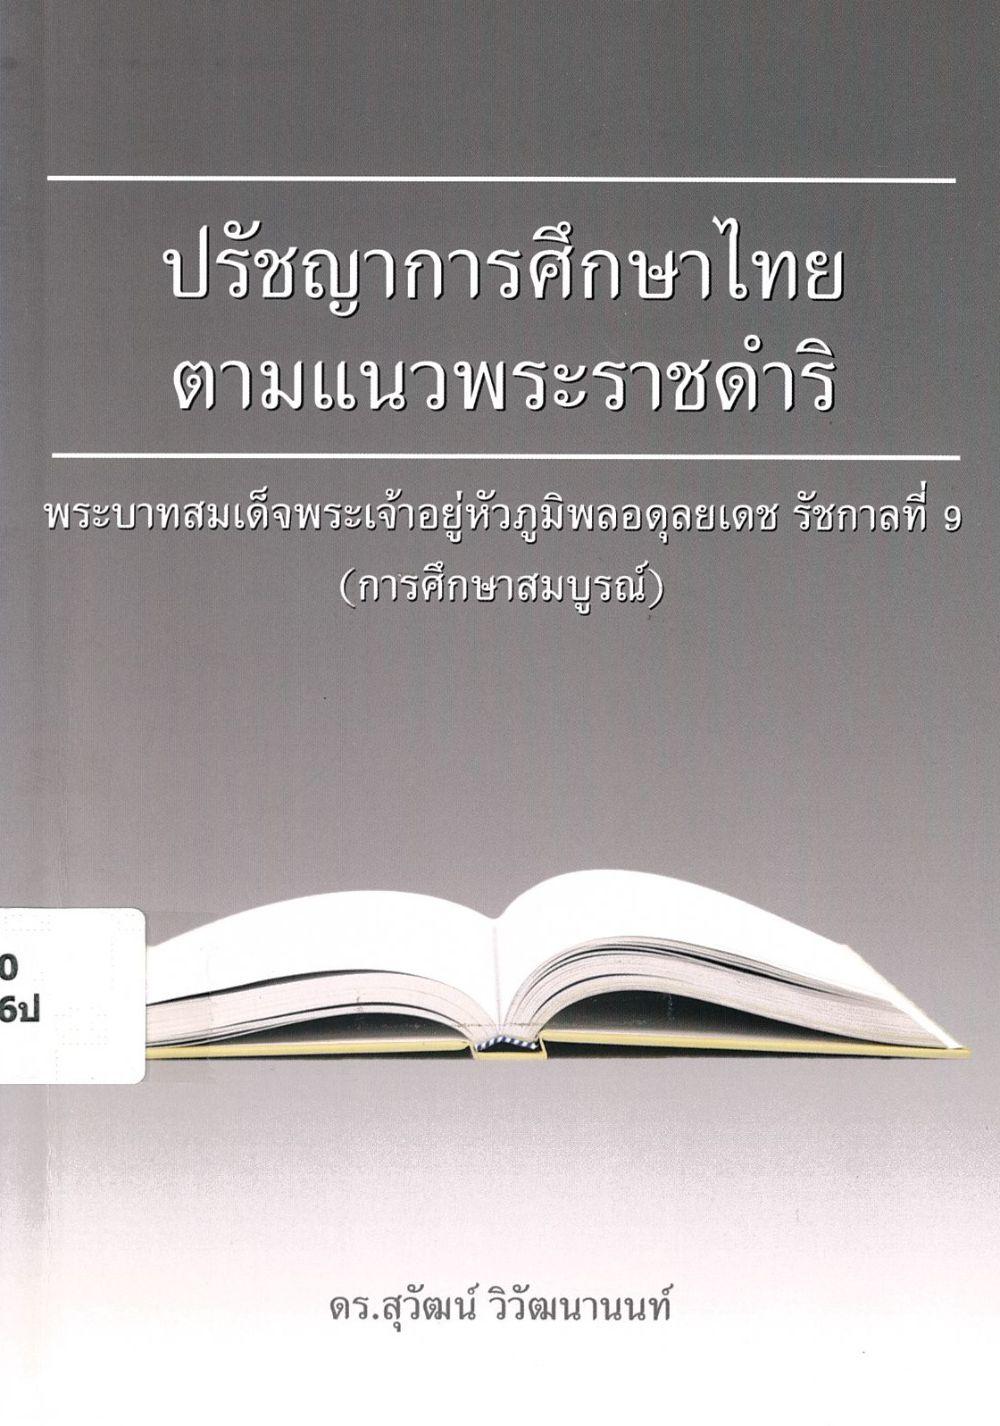 ปรัชญาการศึกษาไทยตามแนวพระราชดำริ พระบาทสมเด็จพระเจ้าอยู่หัวภูมิพลอดุลยเดช รัชการที่ 9 (การศึกษาสมบูรณ์)/ สุวัฒน์ วิวัฒนานนท์